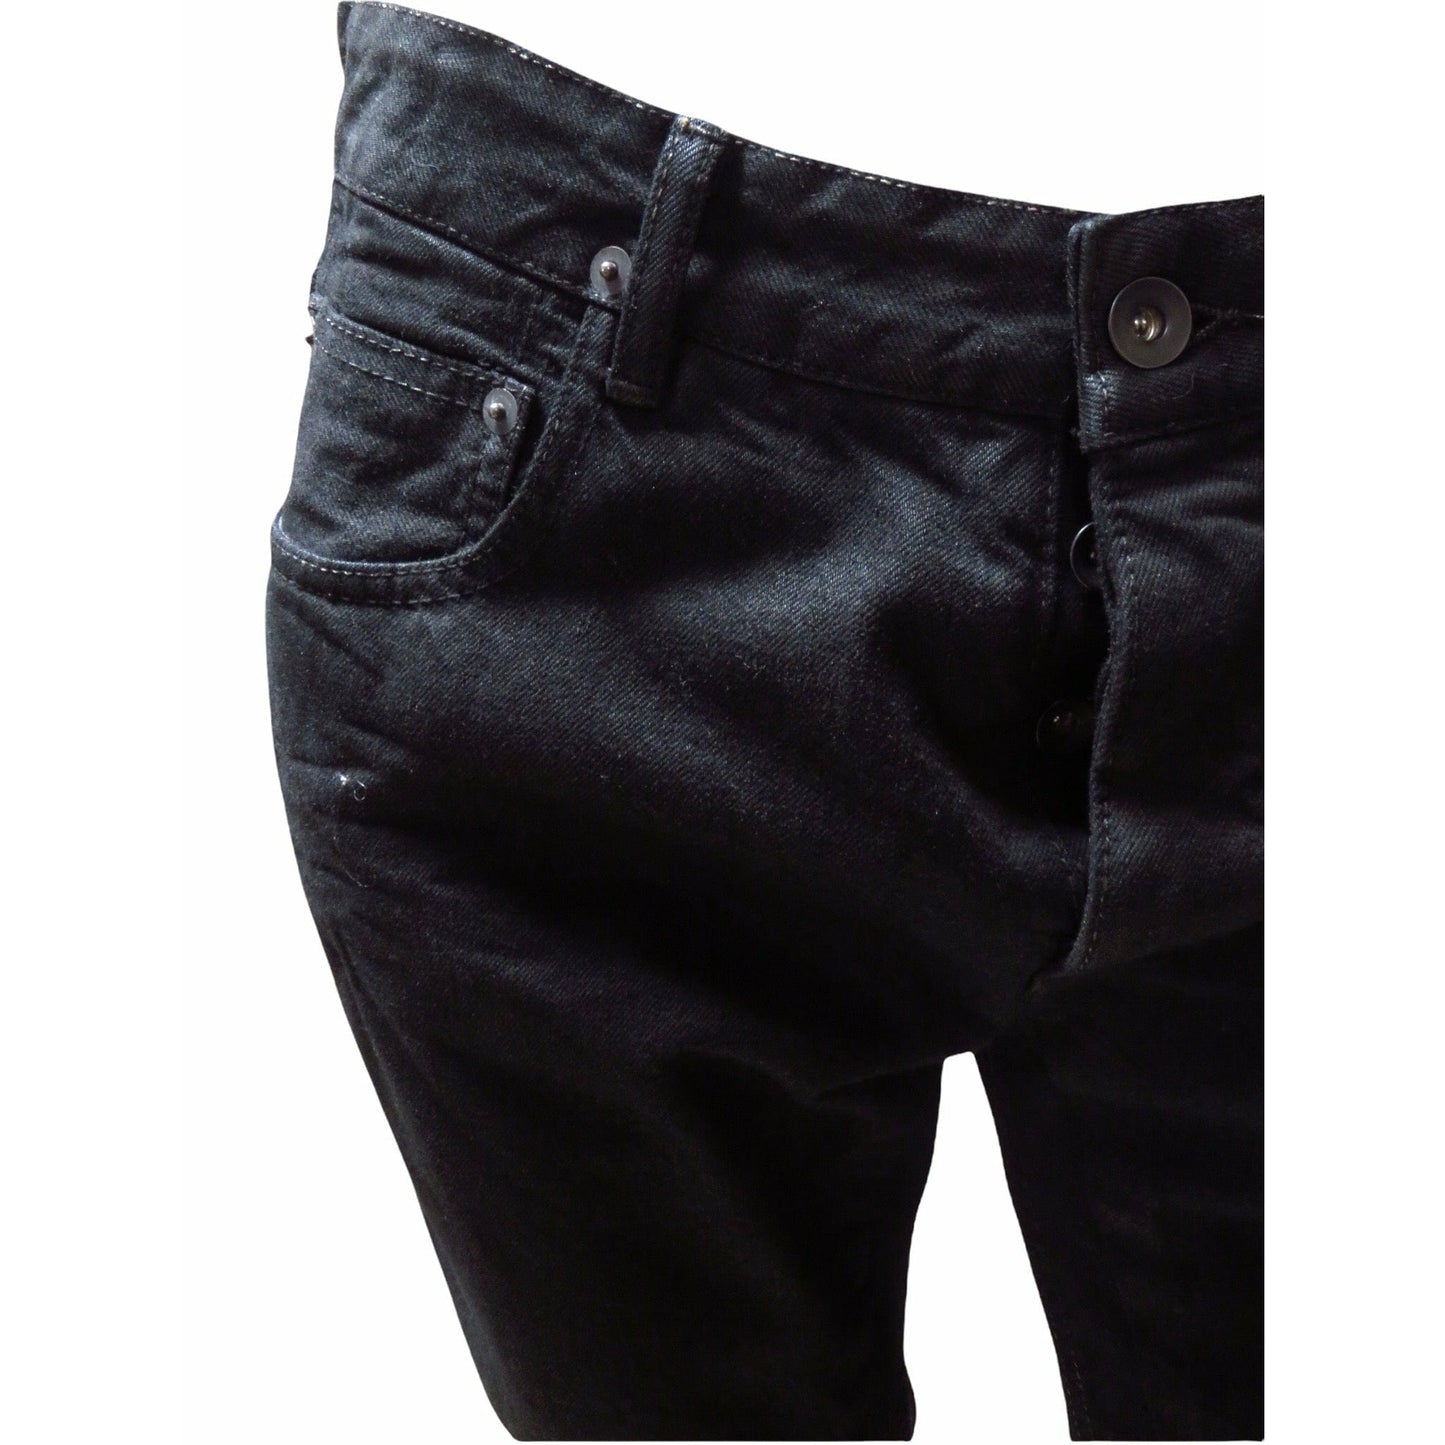 berlin-cut-pants Mens Pants Black